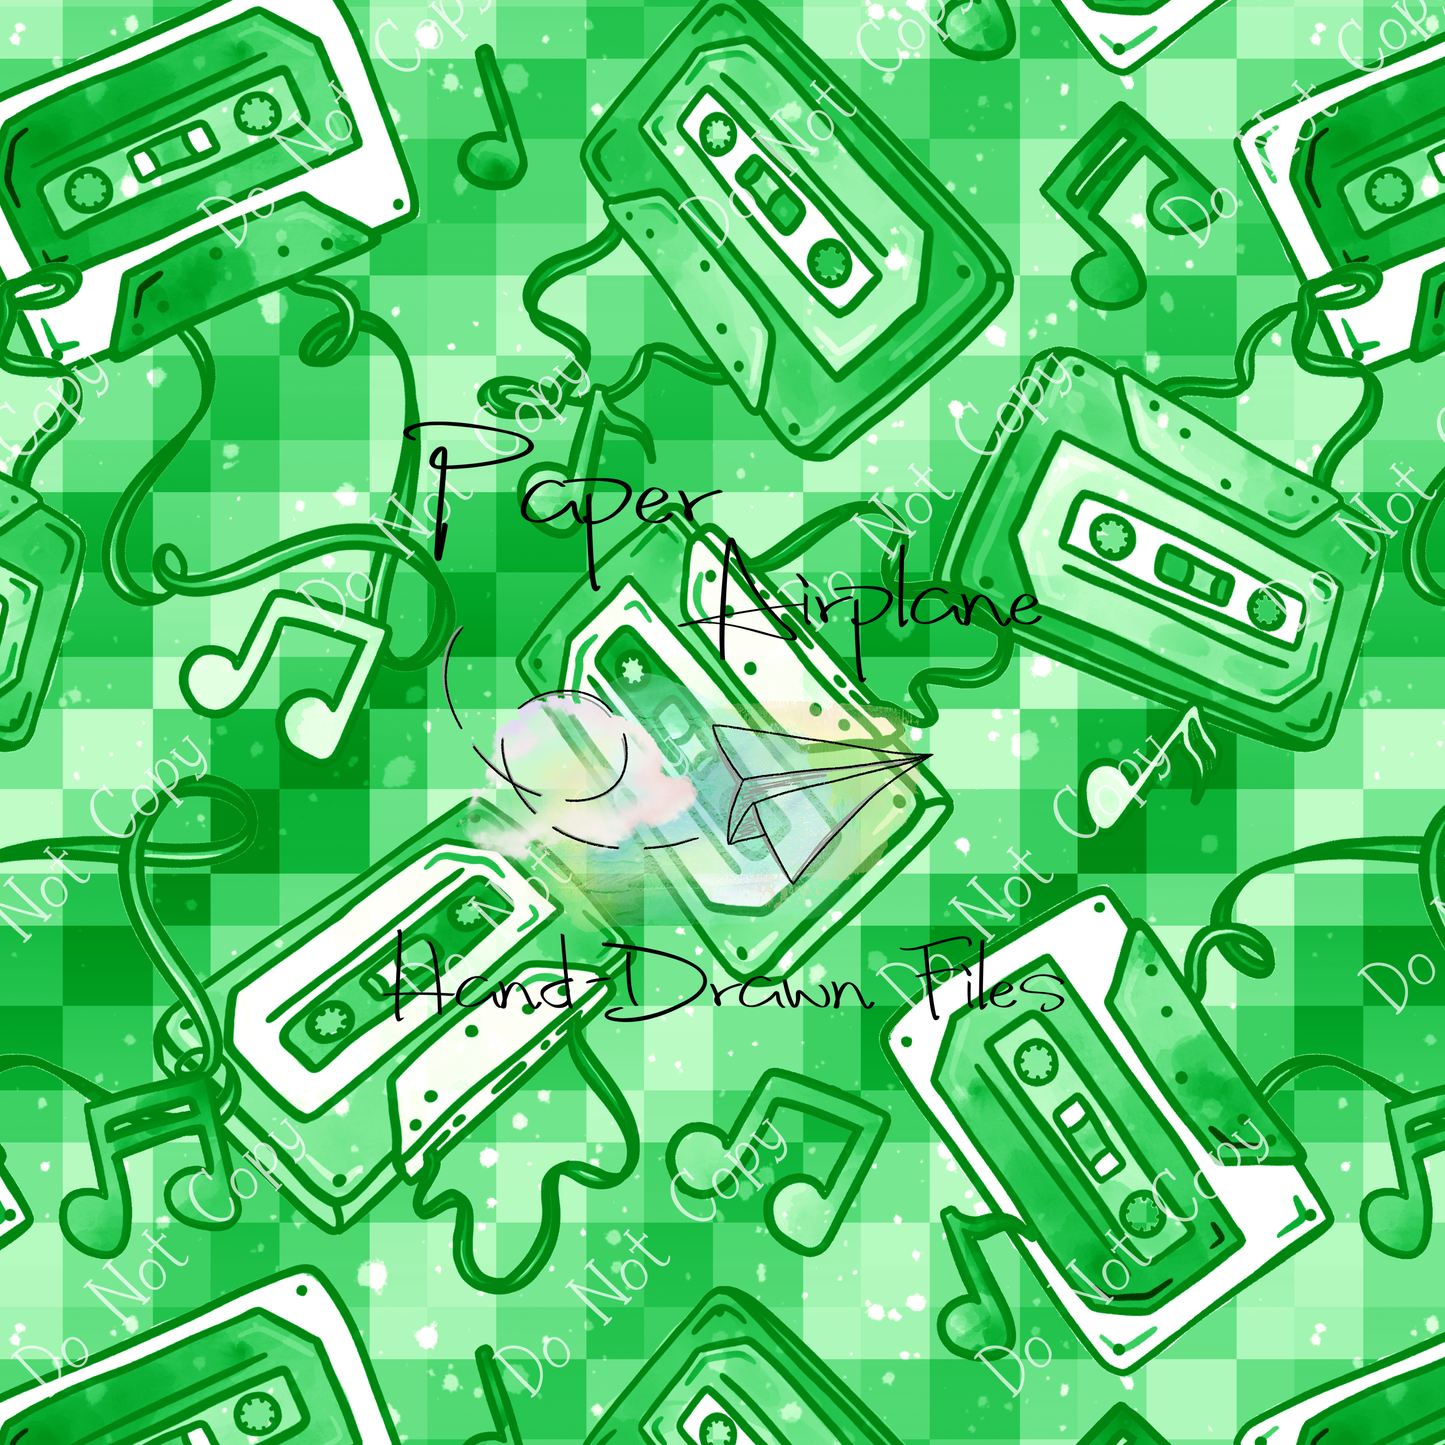 Mixtapes (Green)